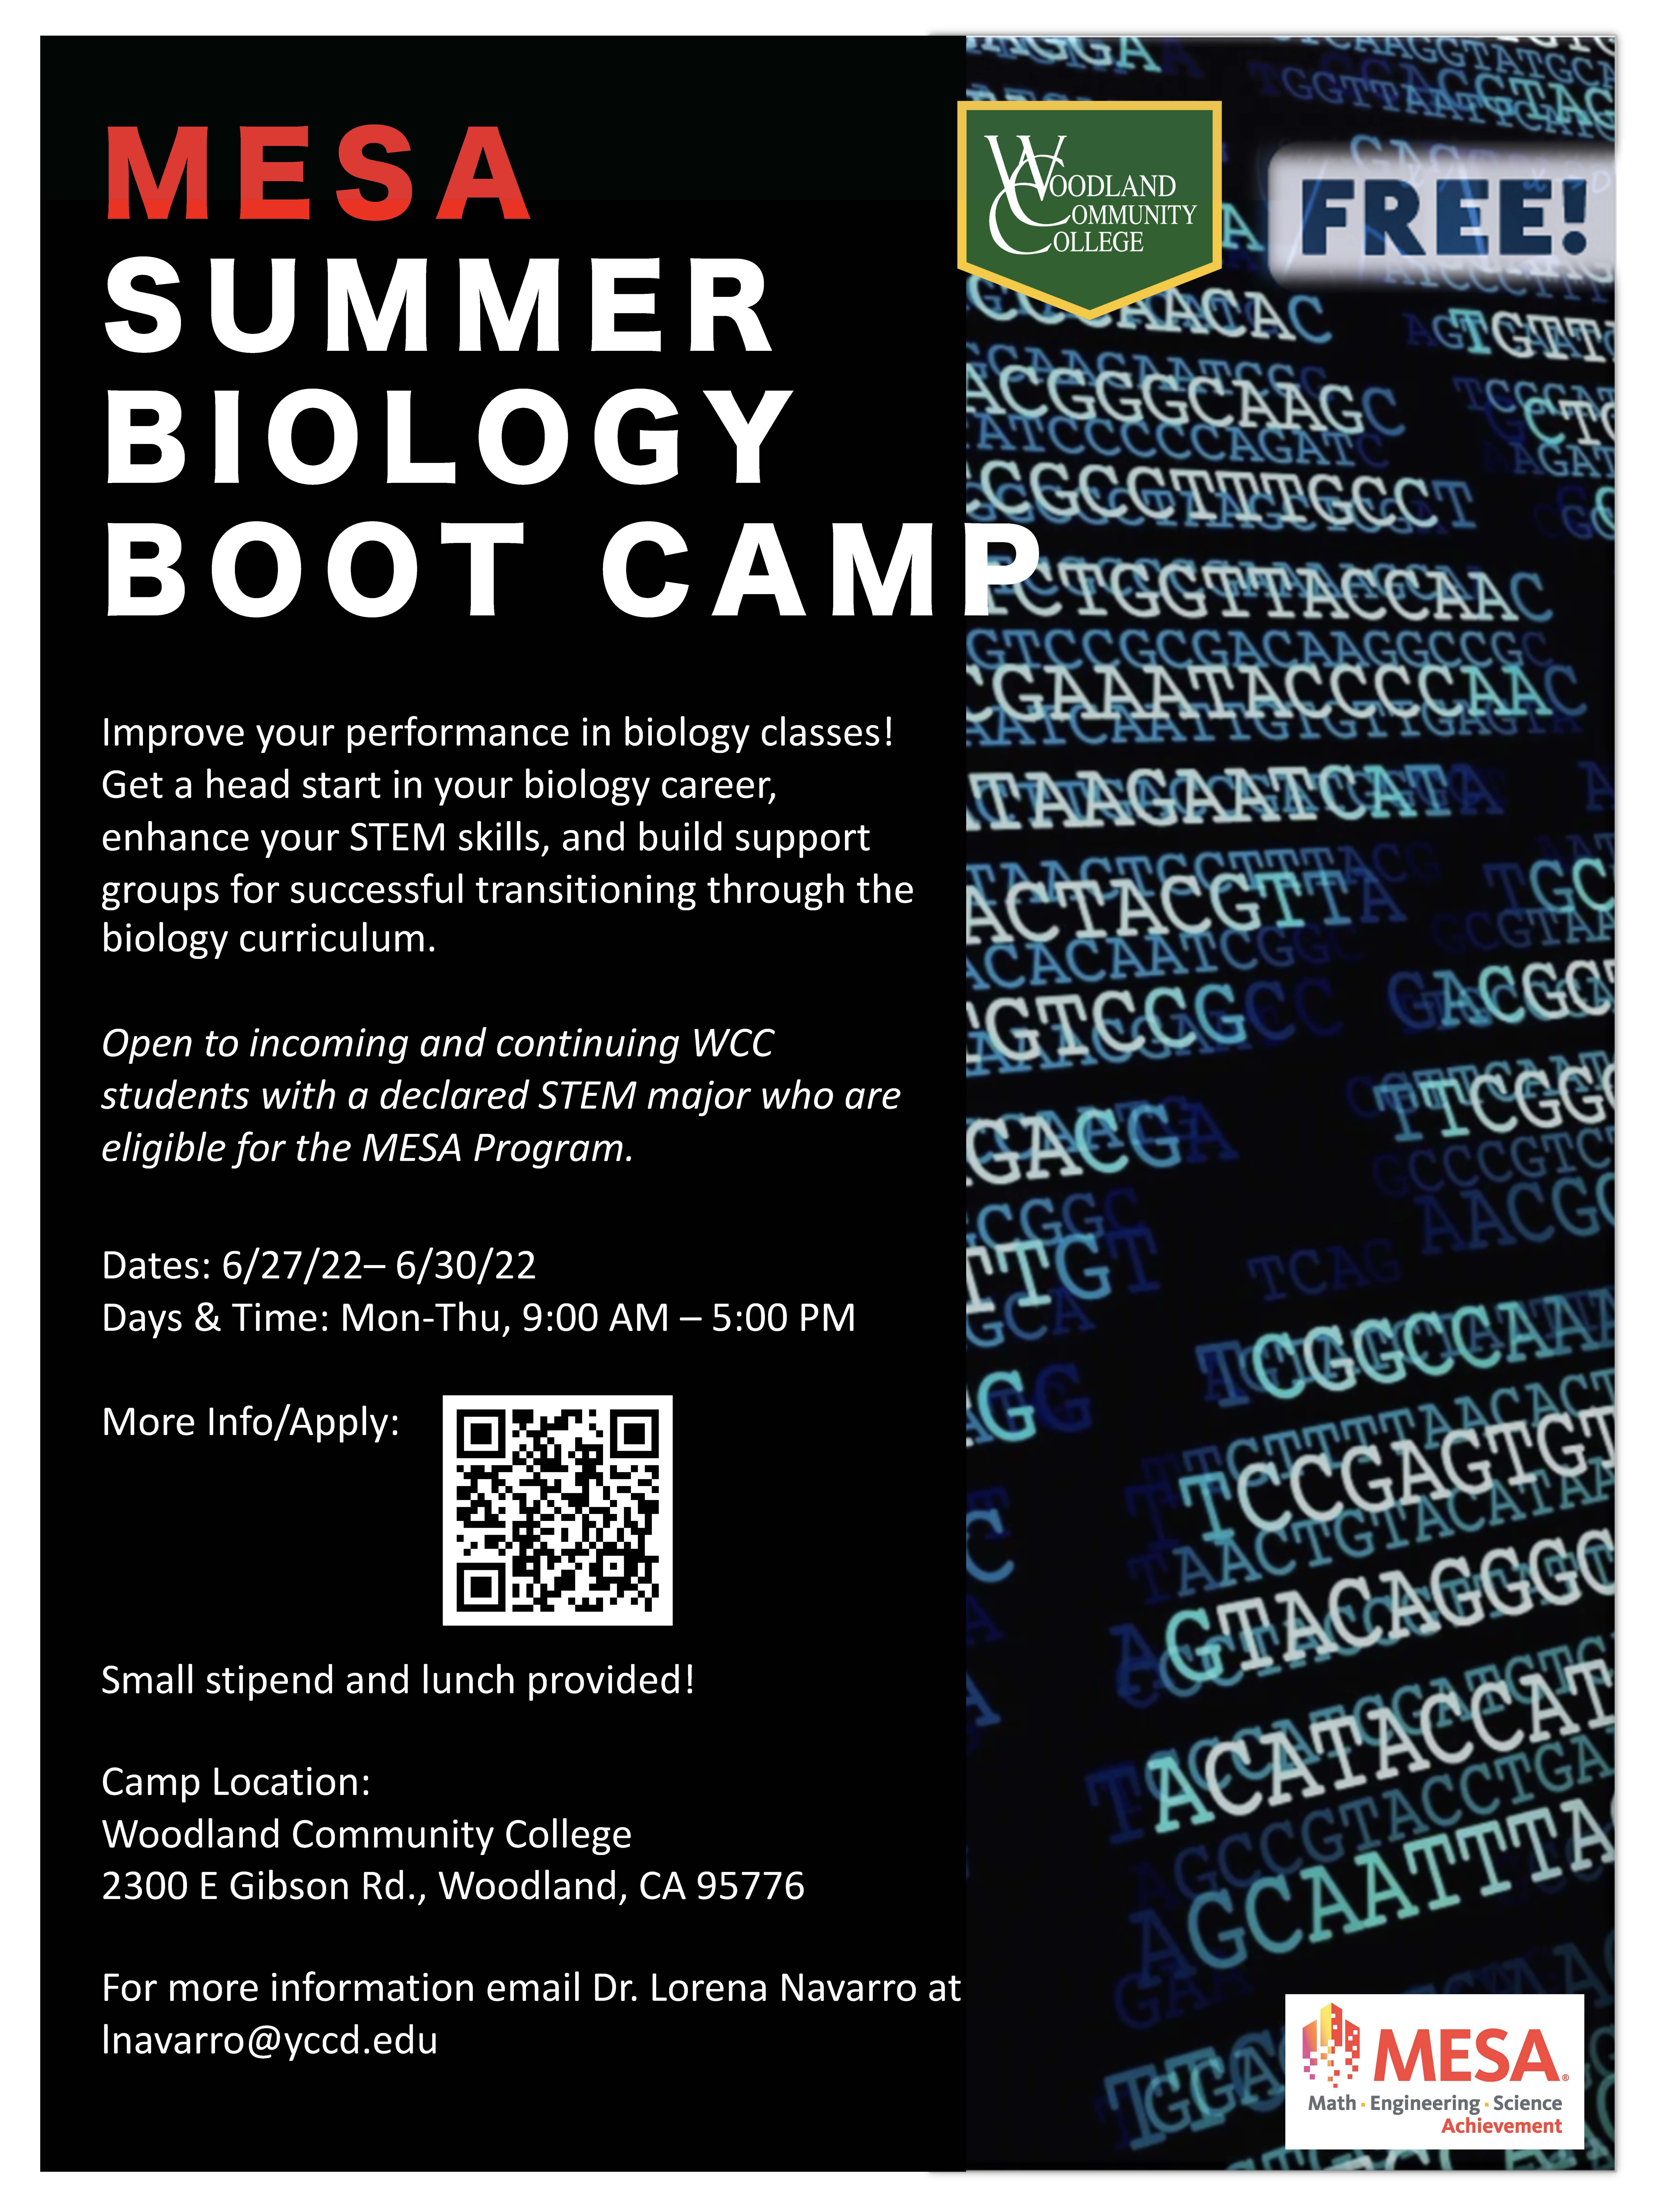 MESA Summer Biology Boot Camp Flyer